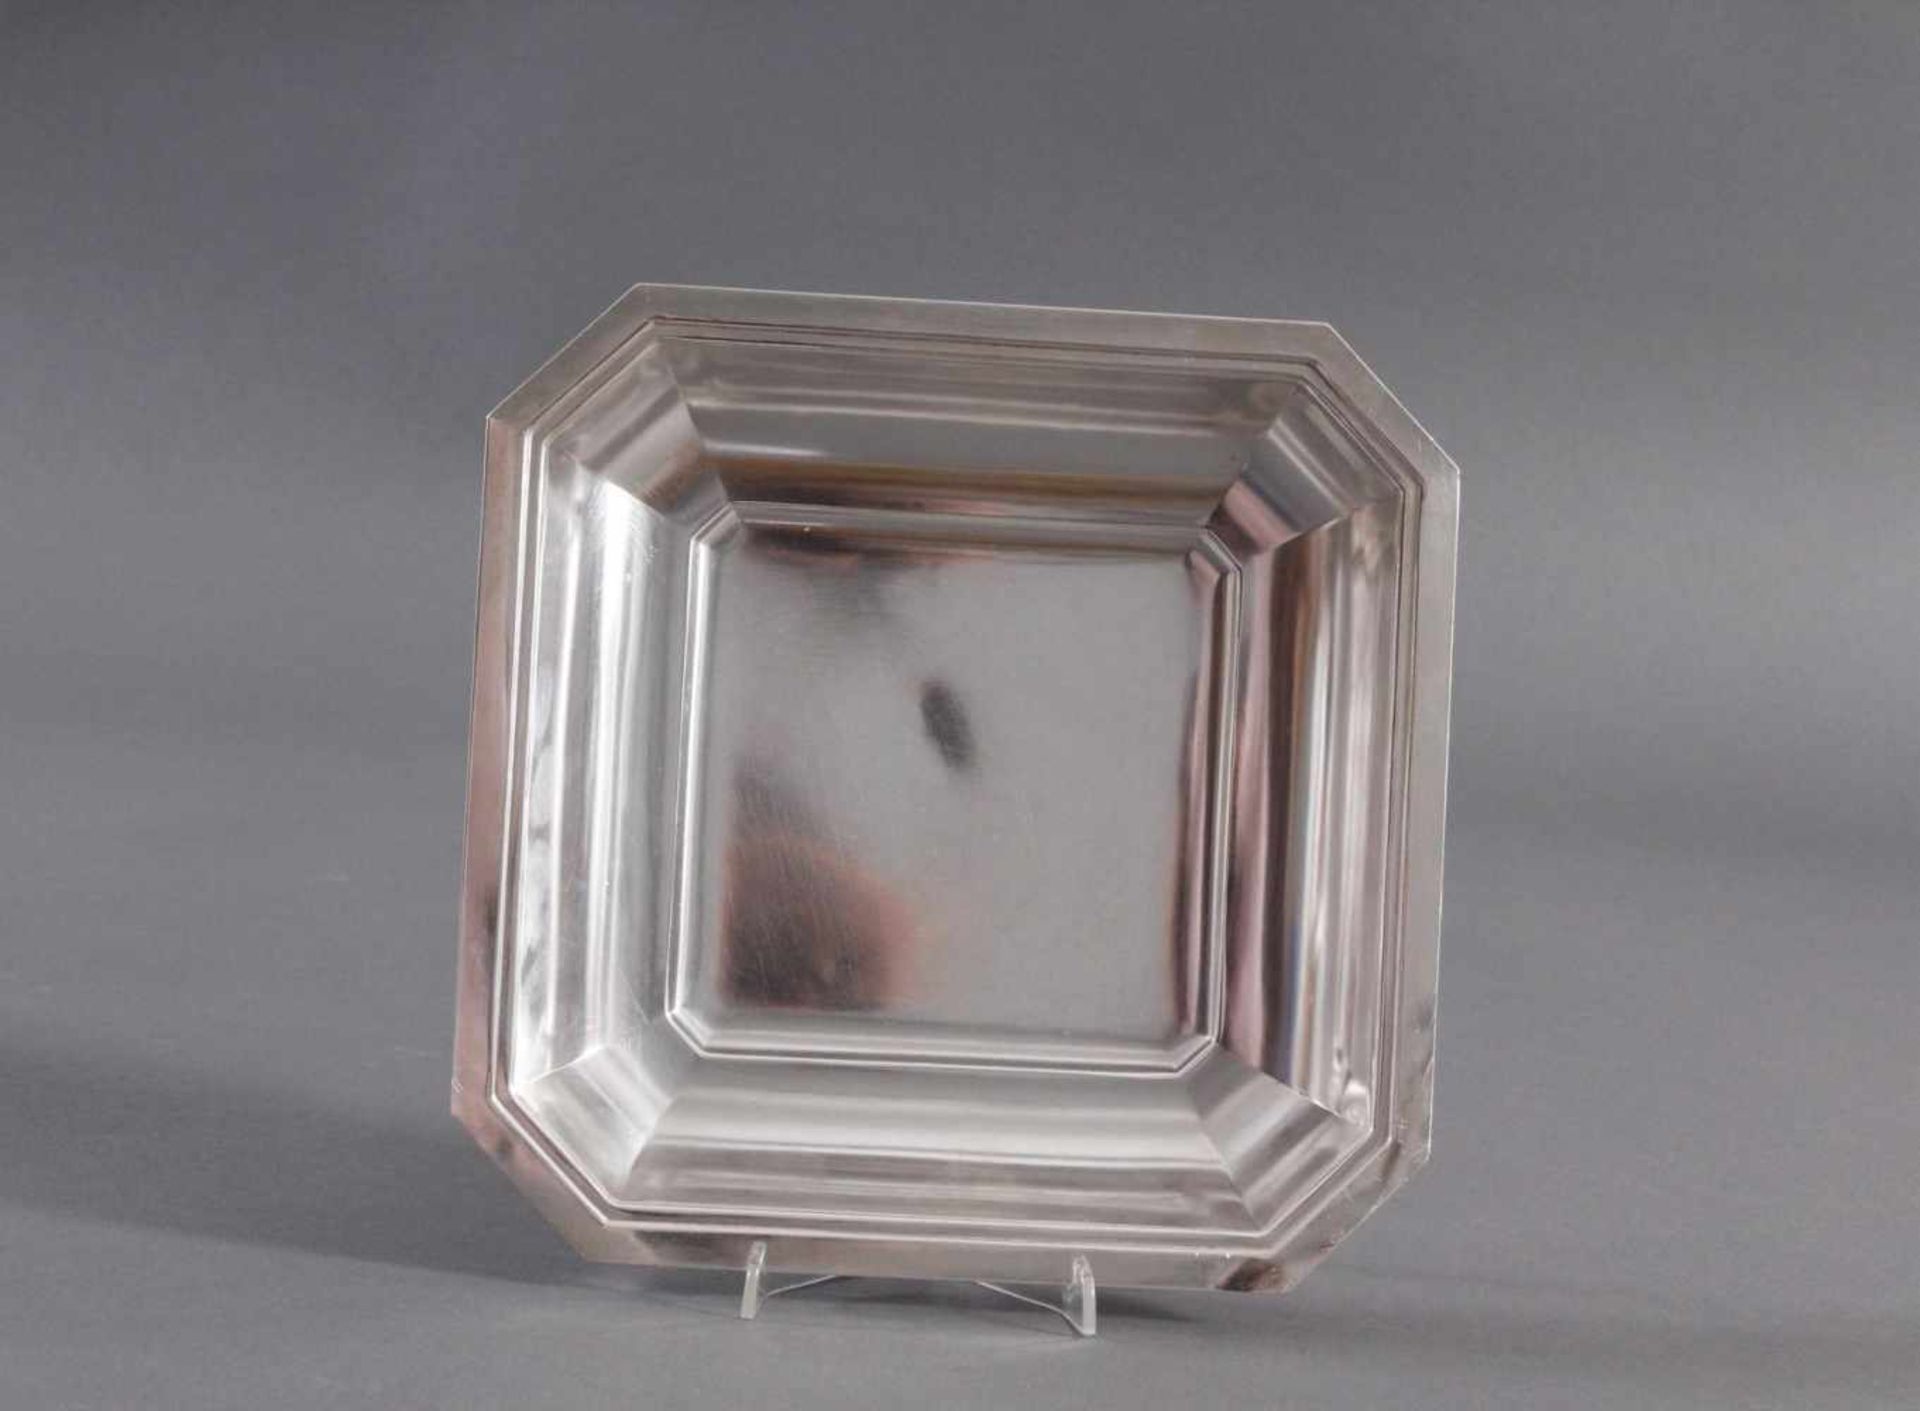 Versilberte SchaleSchale, quadratische Form, geringer Gebrauchsspuren, ca. 23,5 x 23,5 cm, ca. 400 - Image 2 of 3